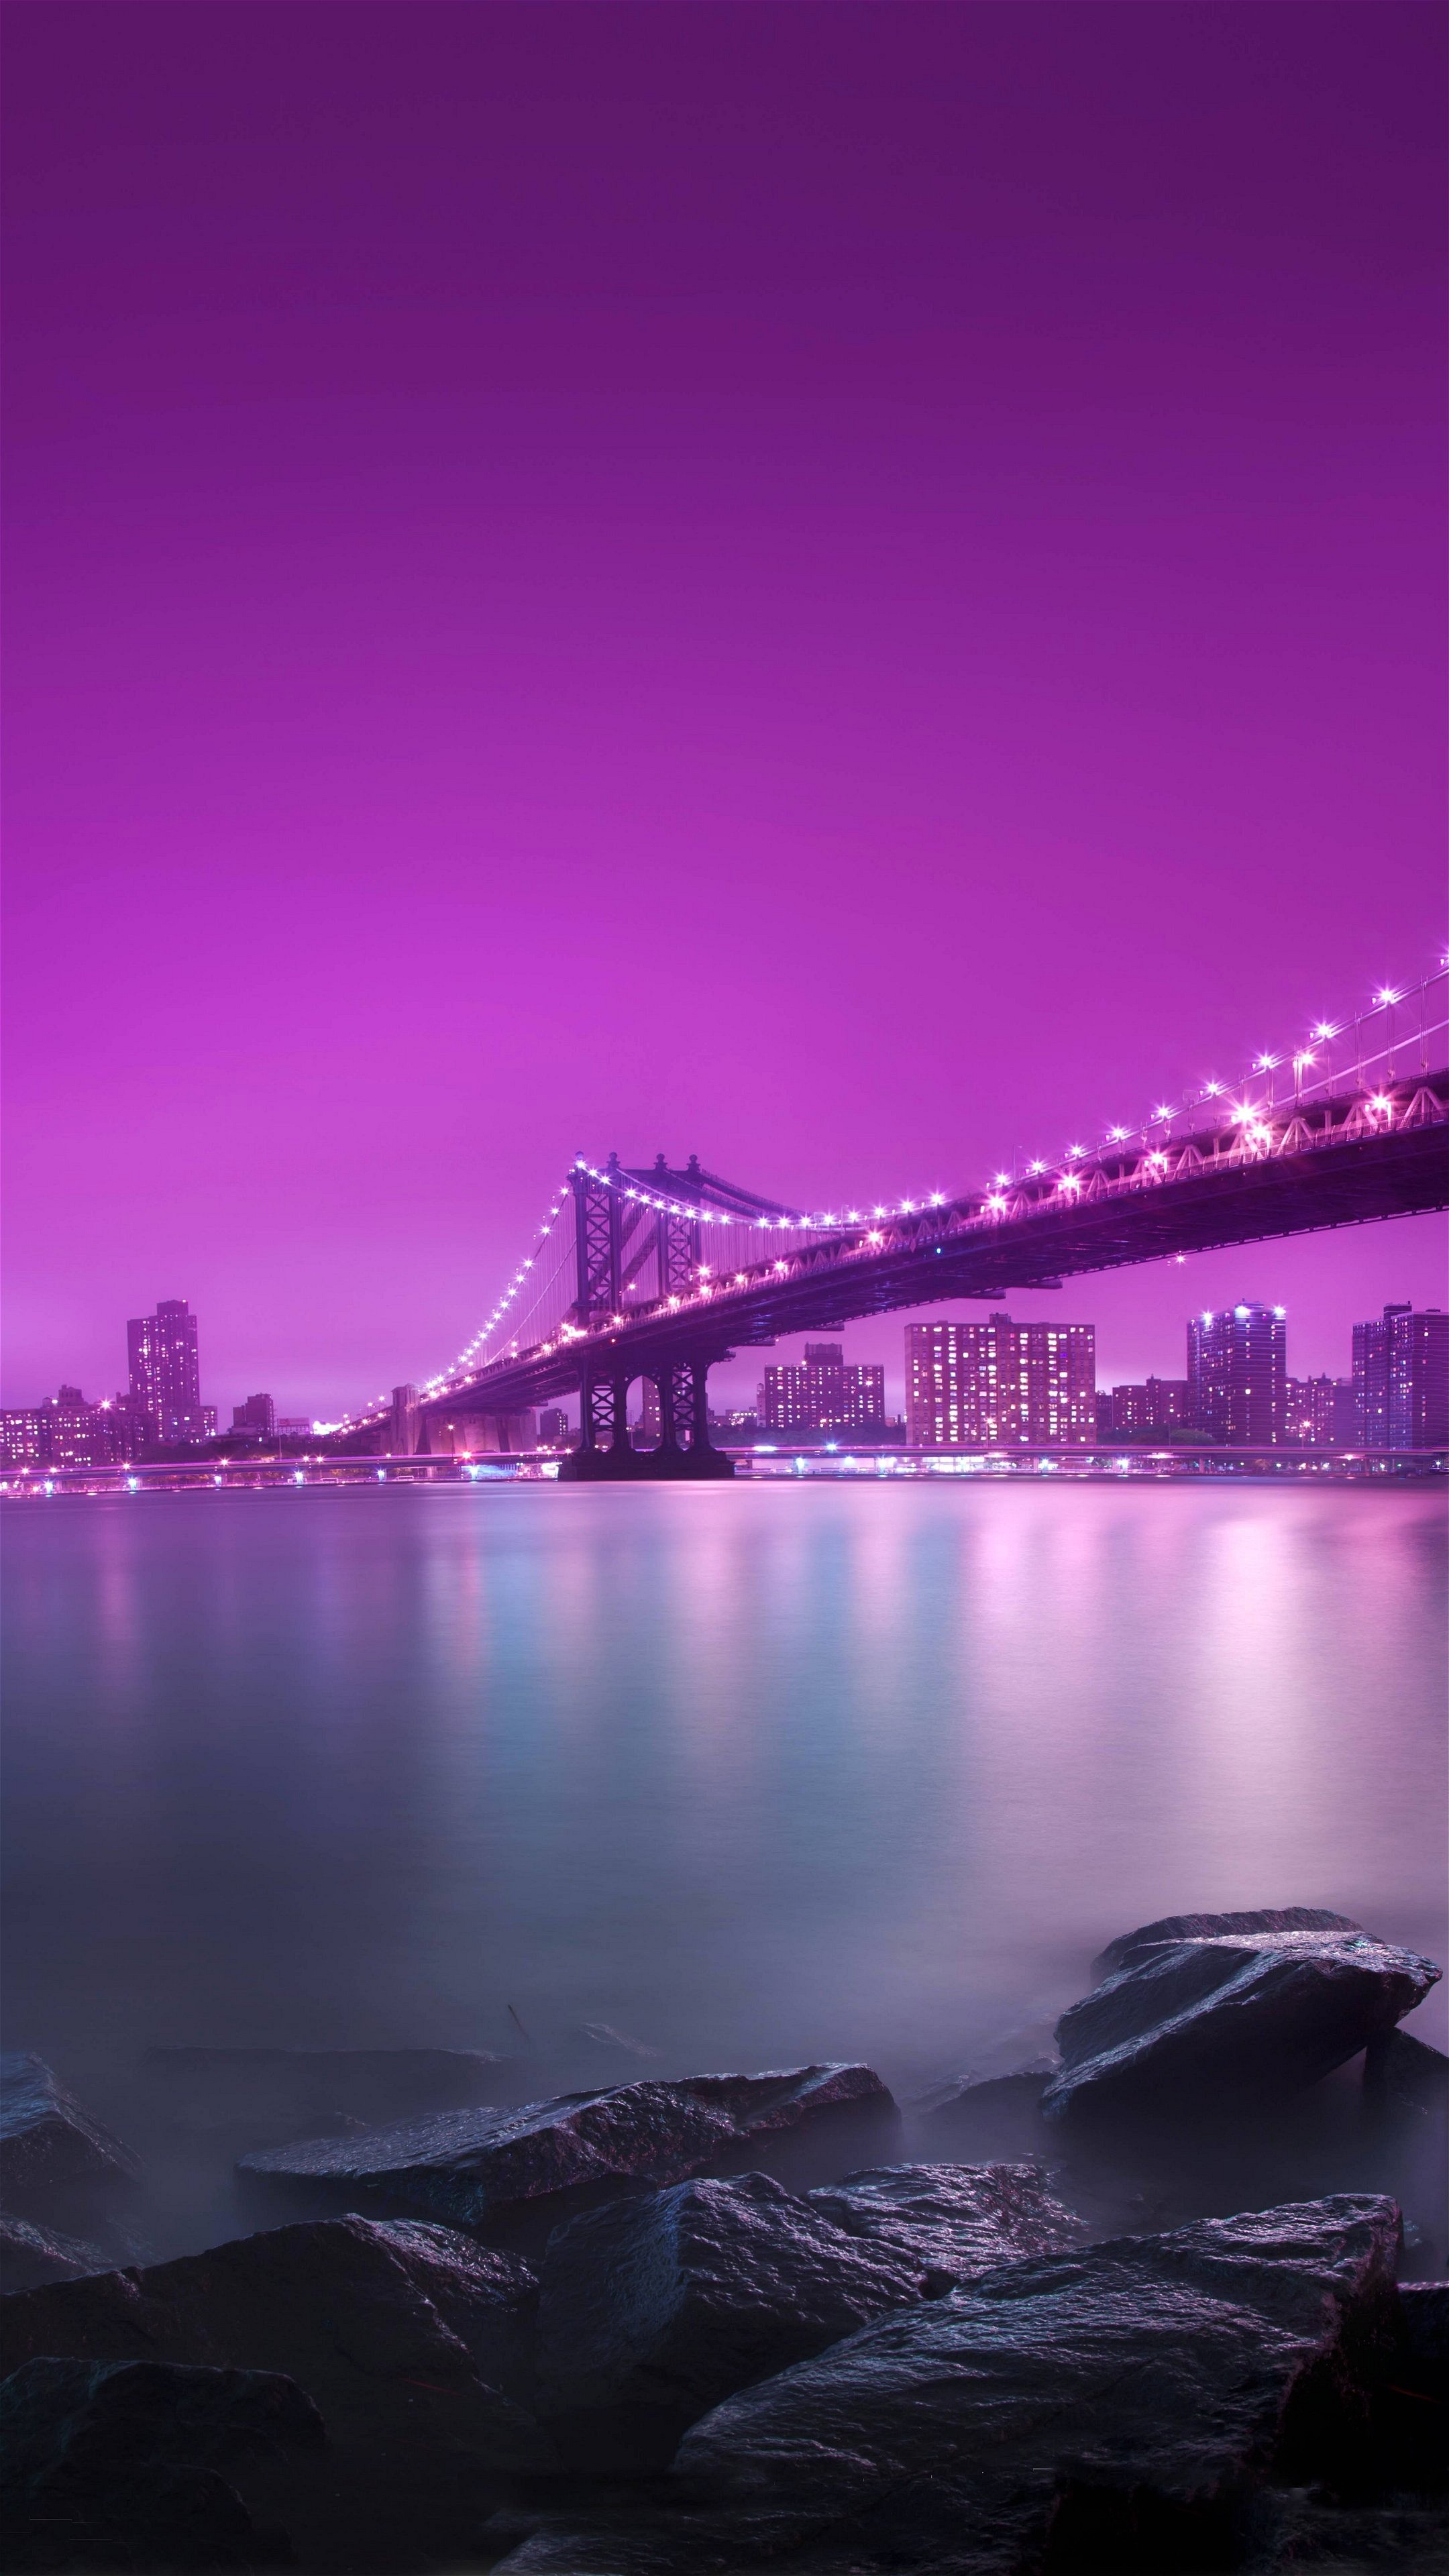 fond d'écran pour mobile android,paysage urbain,ciel,violet,violet,rose